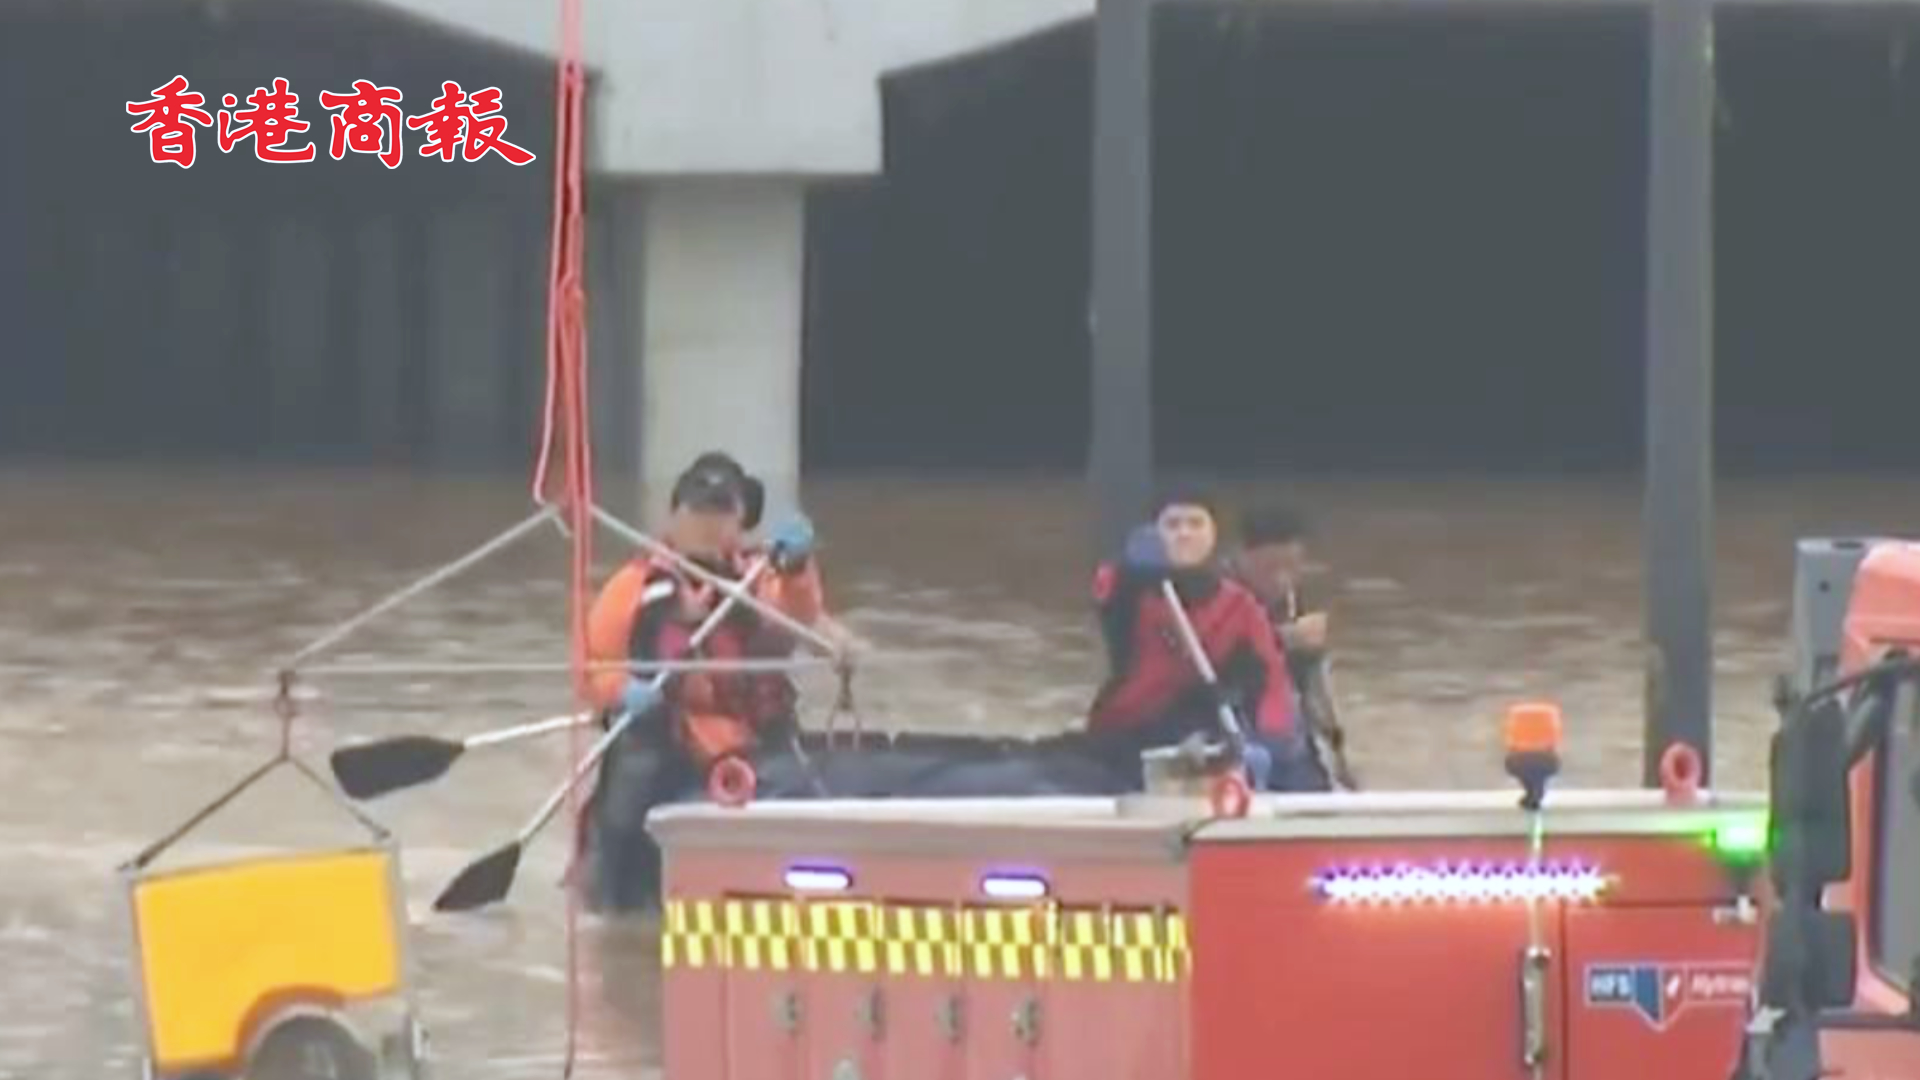 有片 | 韓國忠清北道地下車道被淹事故現場發現7具遇難者遺體